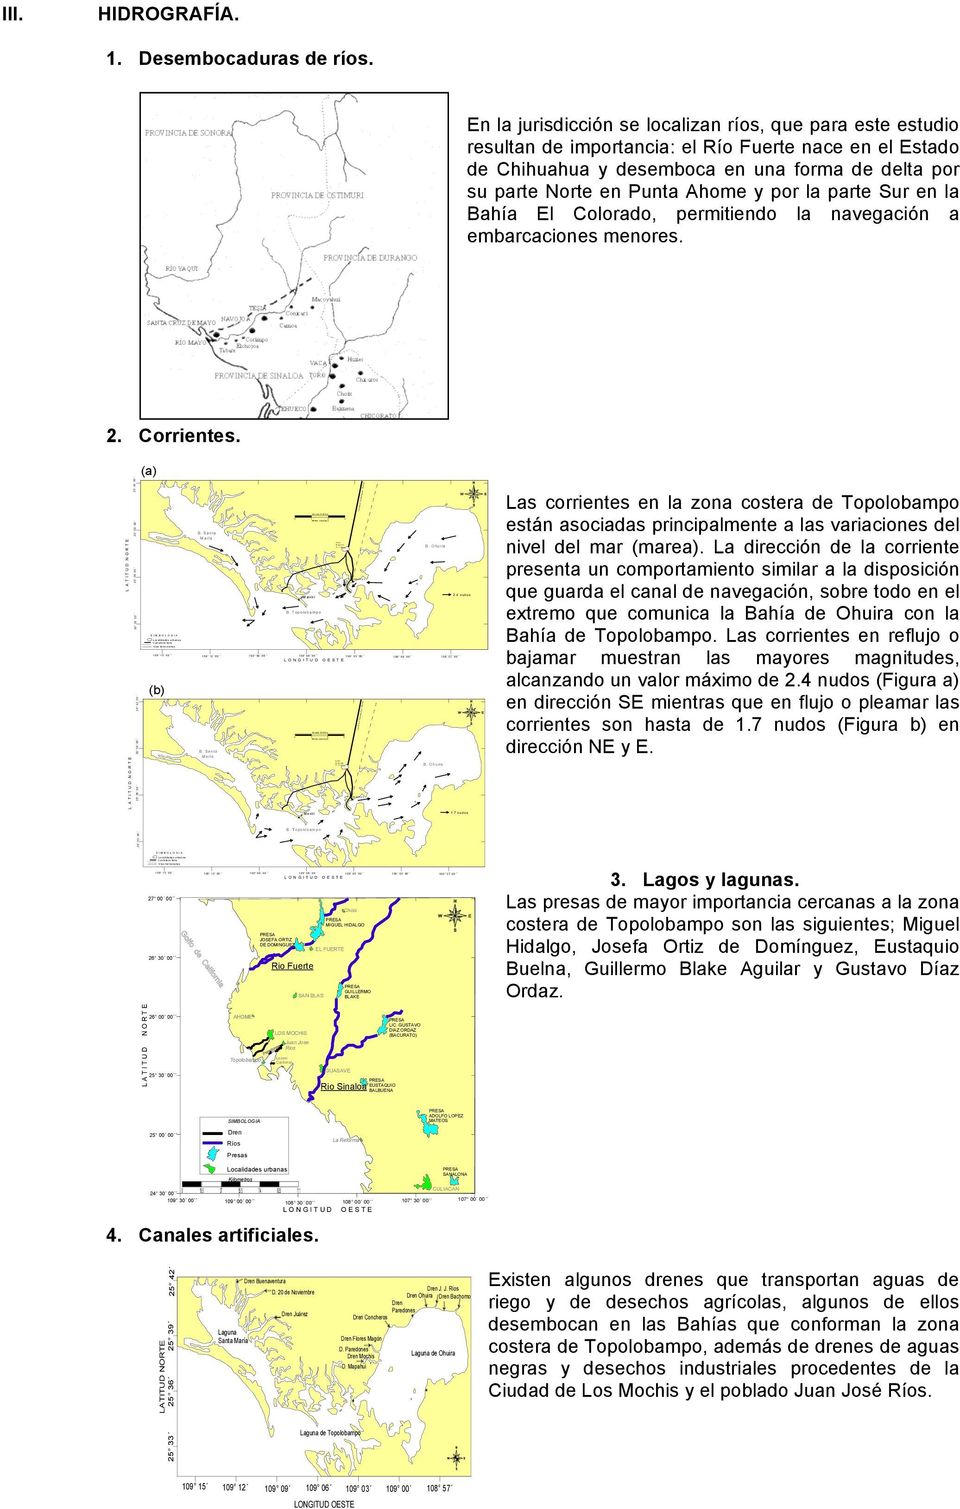 En la jurisdicción se localizan ríos, que para este estudio resultan de importancia: el Río Fuerte nace en el Estado de Chihuahua y desemboca en una forma de delta por su parte Norte en Punta Ahome y